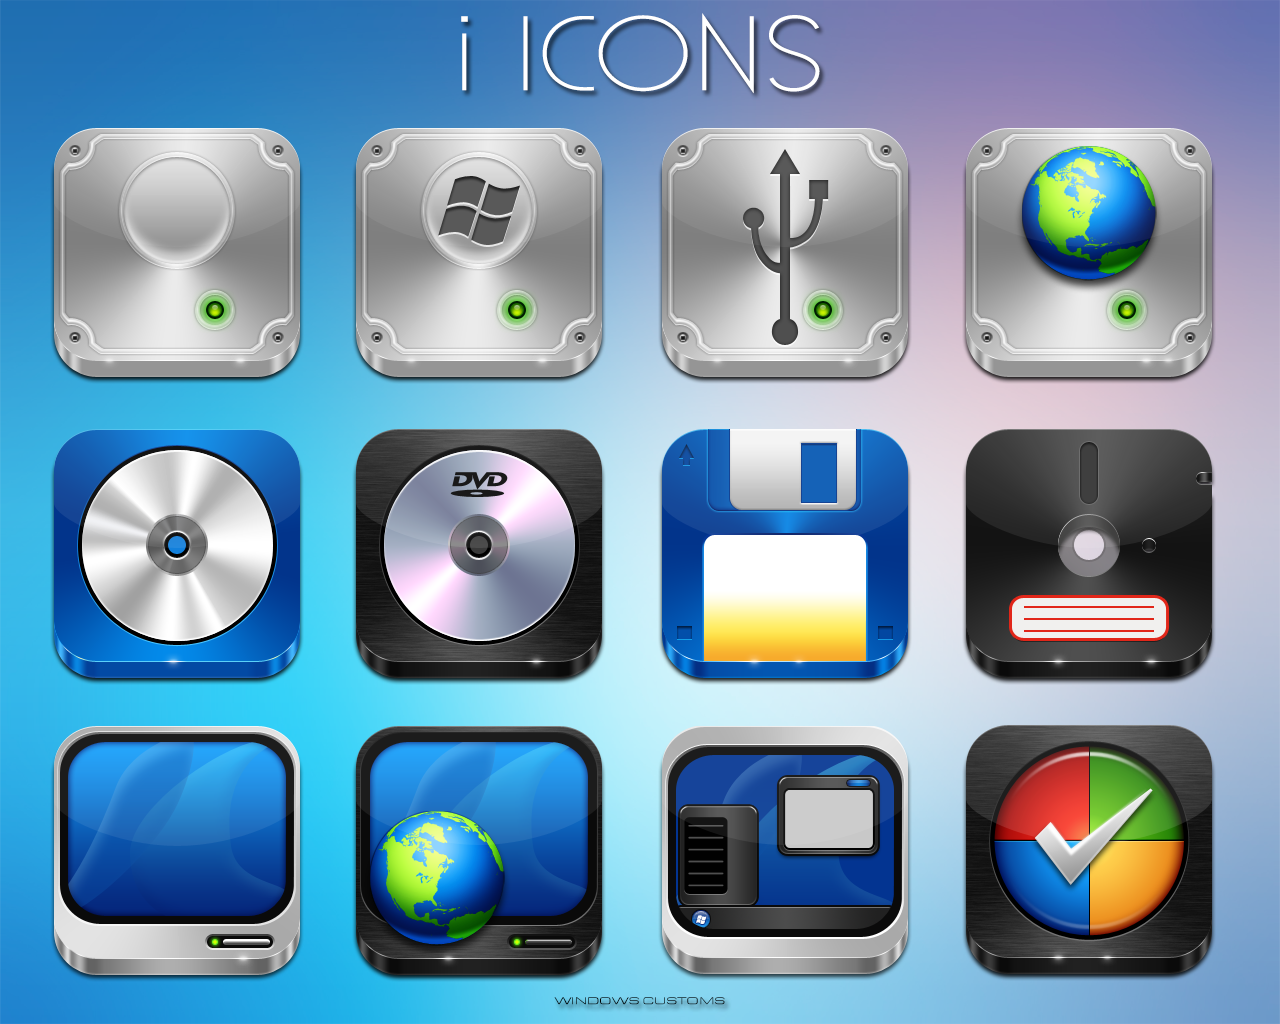 Os icon pack. Иконки IOS 15. Иконка системного приложения. IOS + Windows иконки. Паки иконок Windows 10.